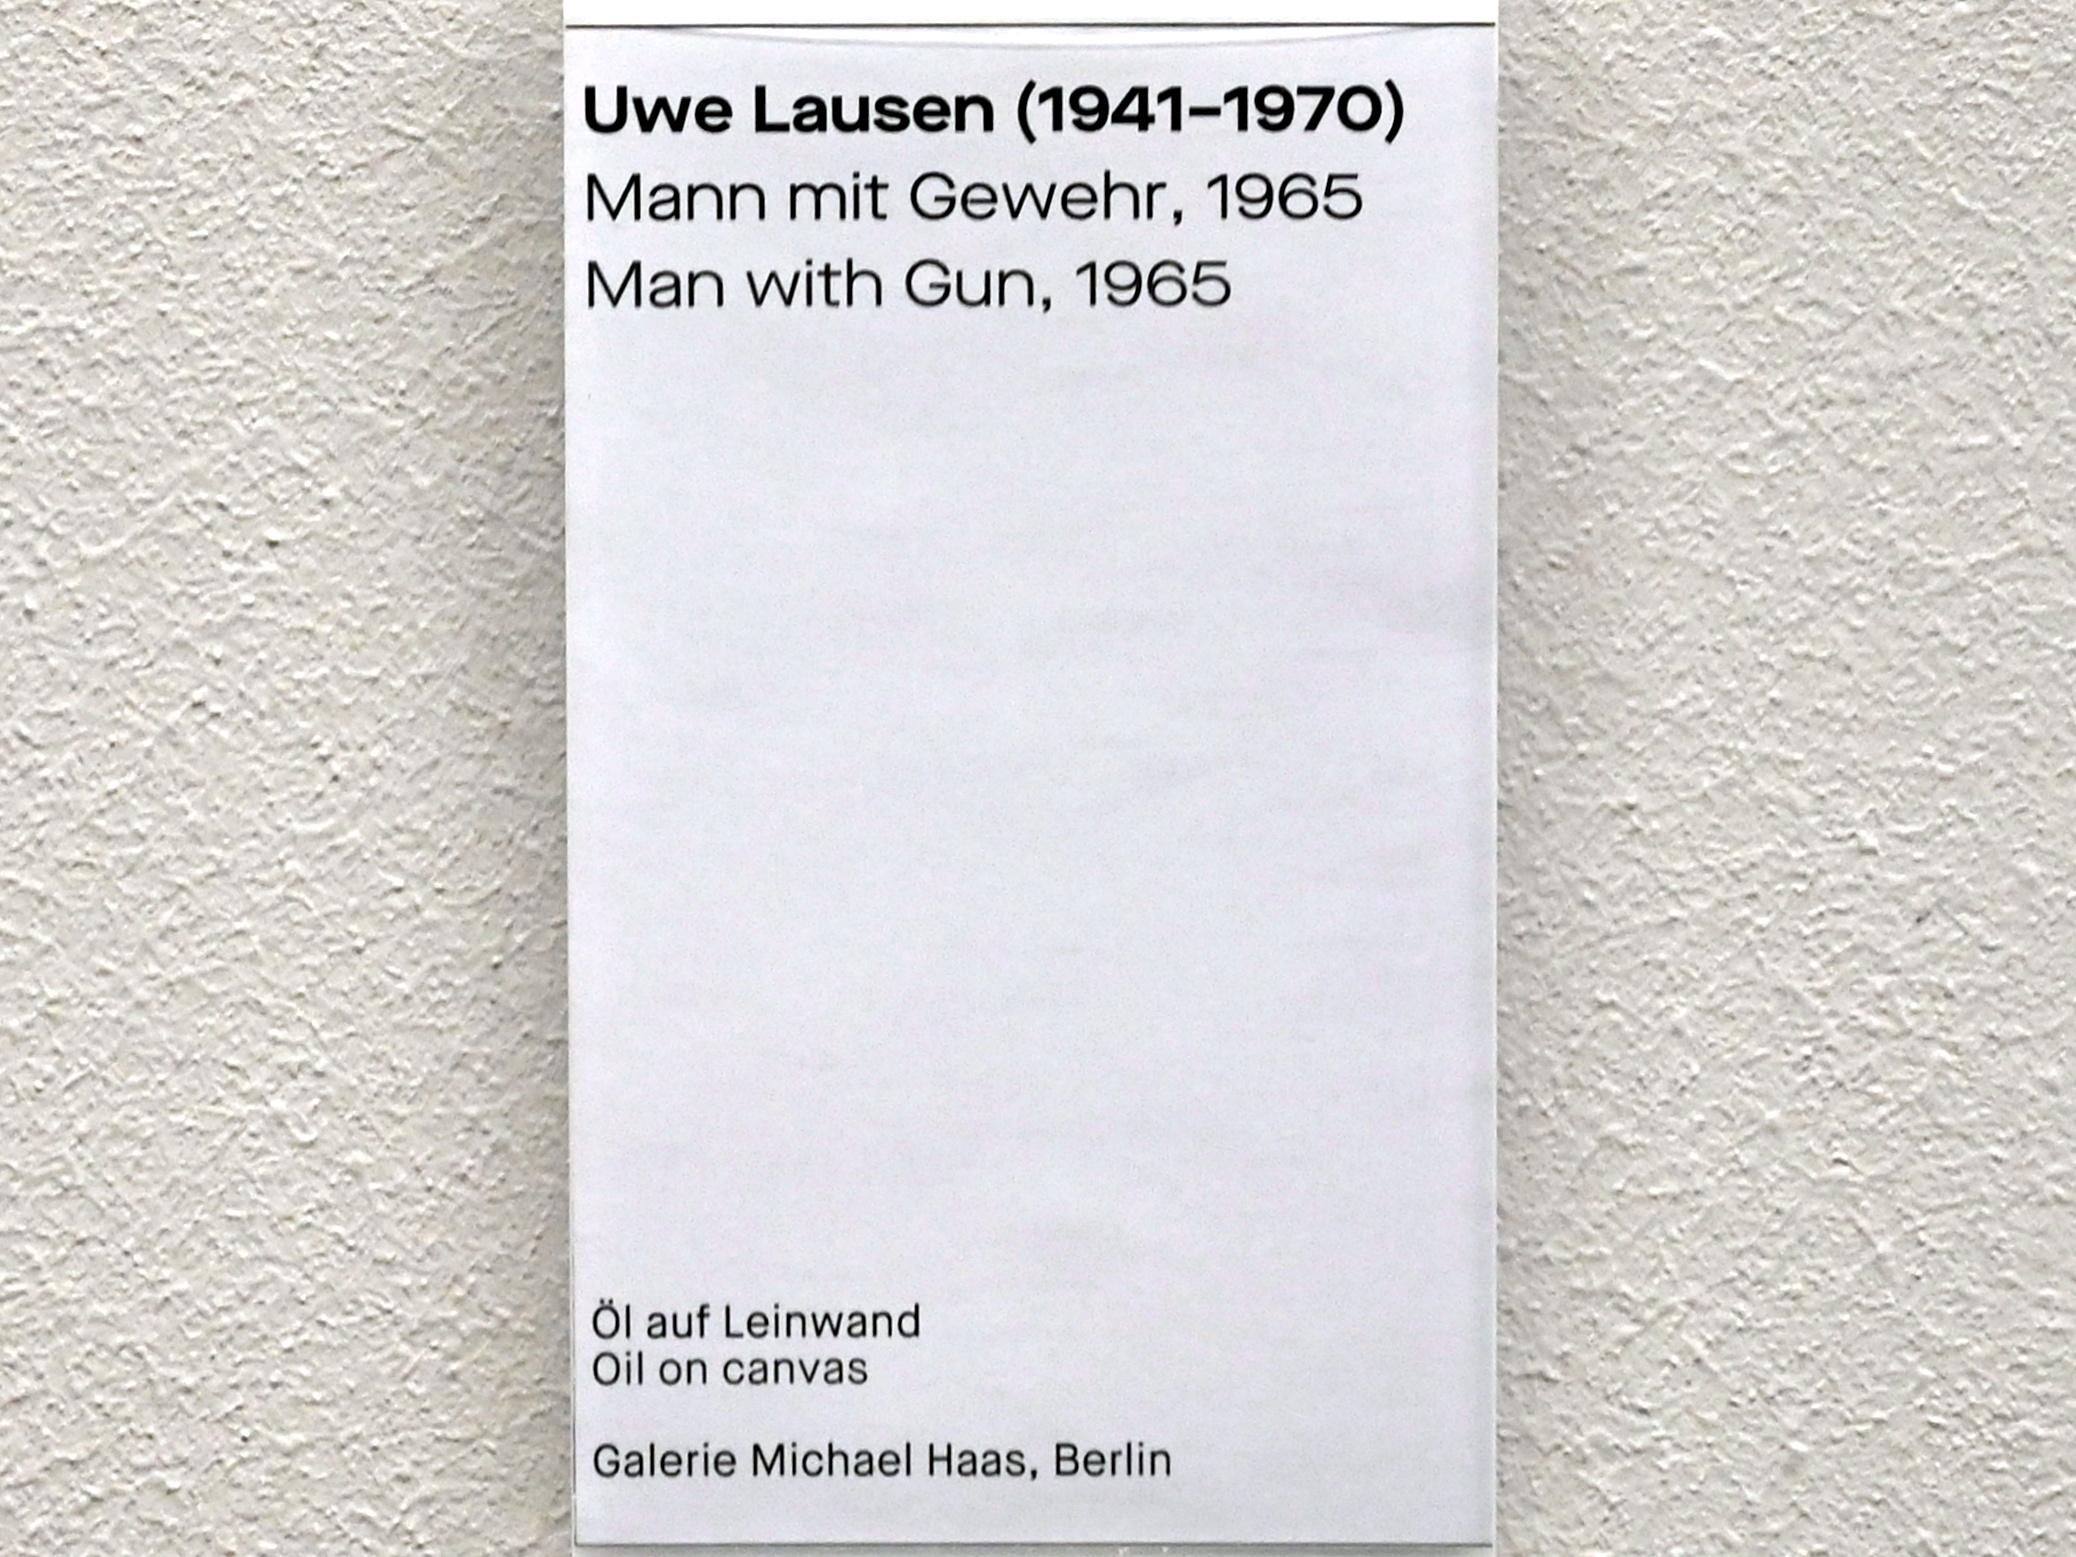 Uwe Lausen (1962–1969), Mann mit Gewehr, Chemnitz, Museum Gunzenhauser, Saal 1.4 - Uwe Lausen und Heide Stolz, 1965, Bild 2/2